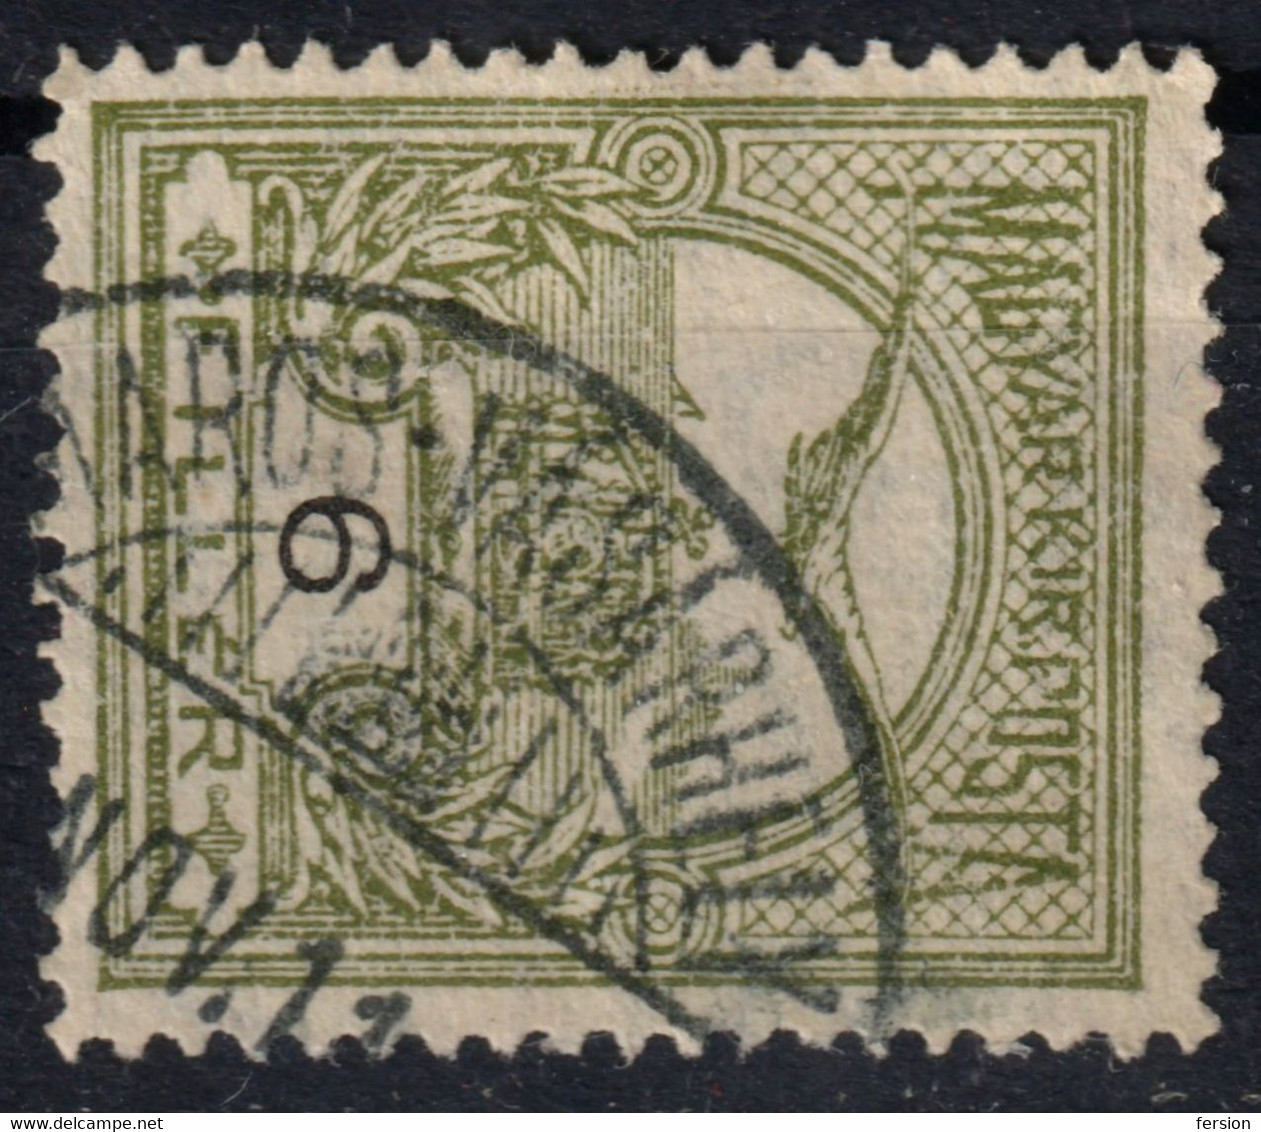 Marosvásárhely  Târgu Mureș Postmark / TURUL Crown 1910's Hungary Romania Transylvania Maros Torda County KuK - 6 Fill - Transylvania